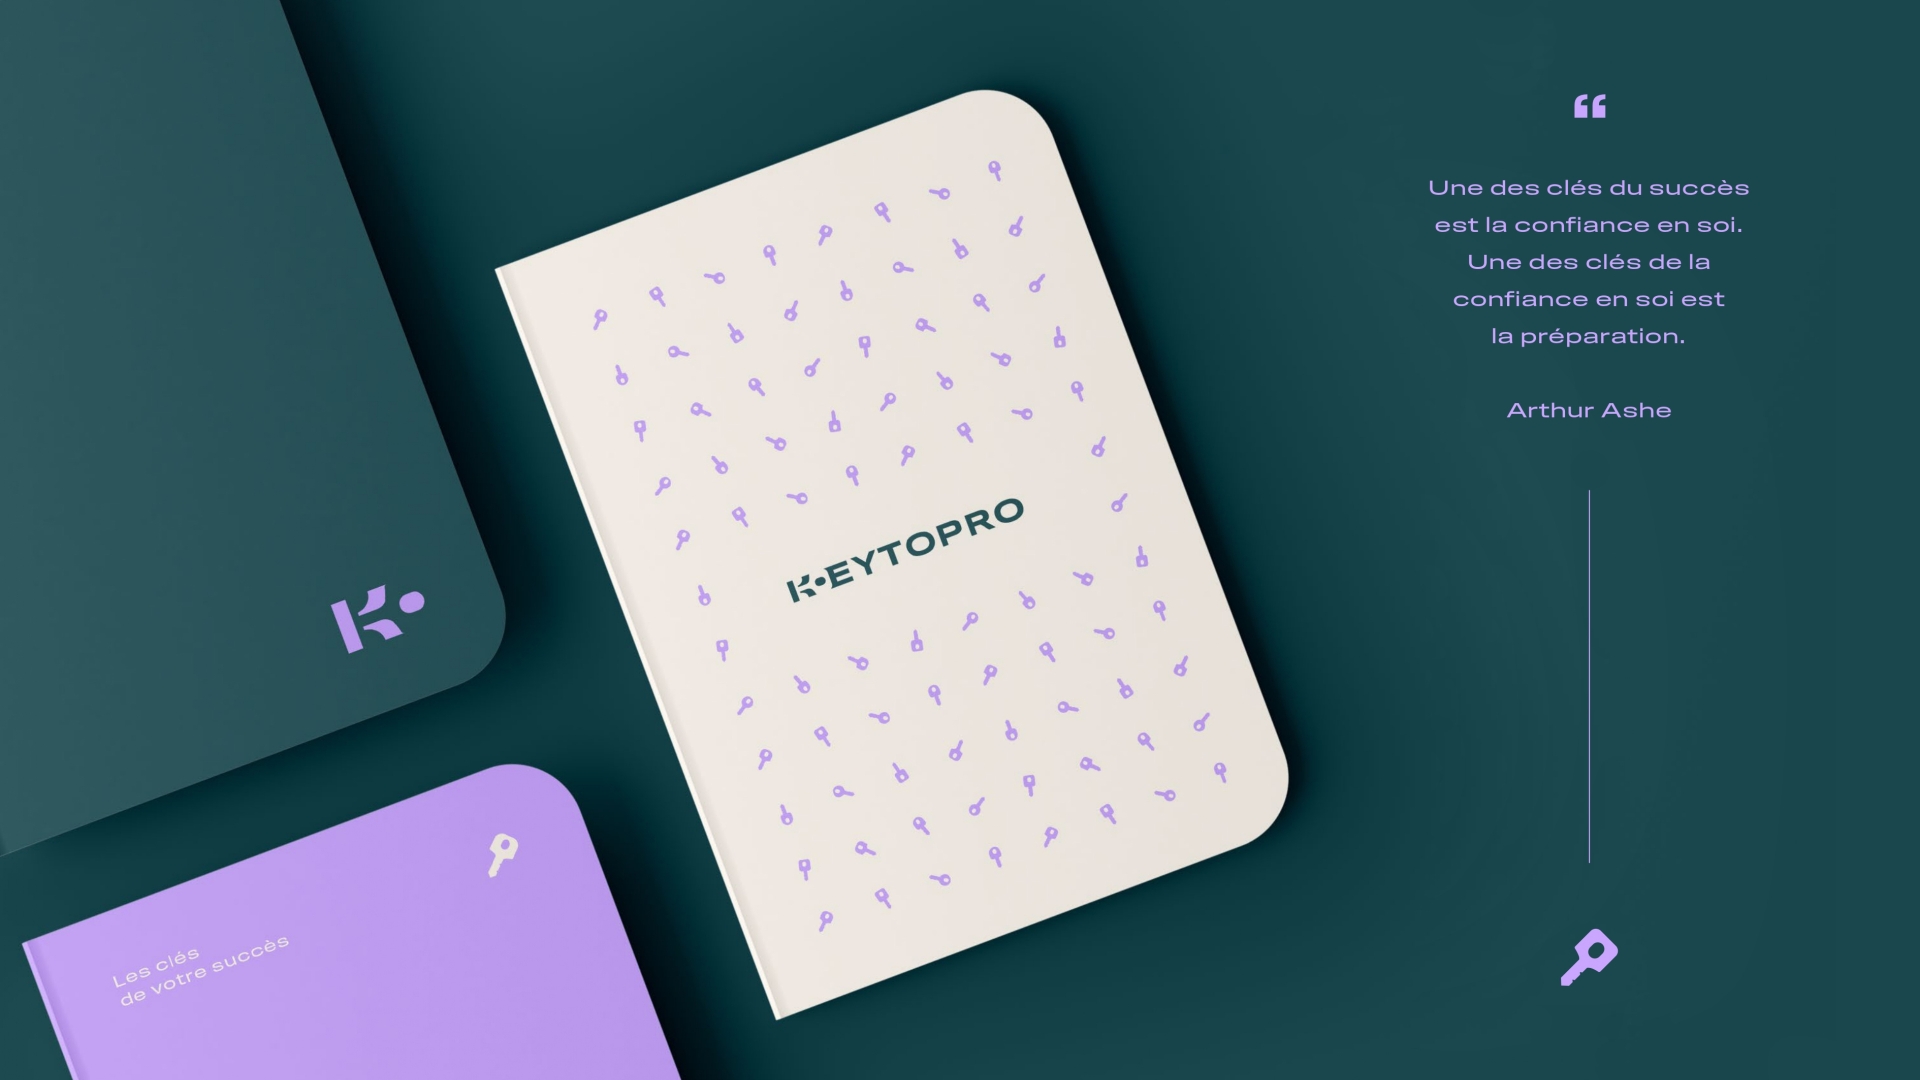 Détails du projet Keytopro